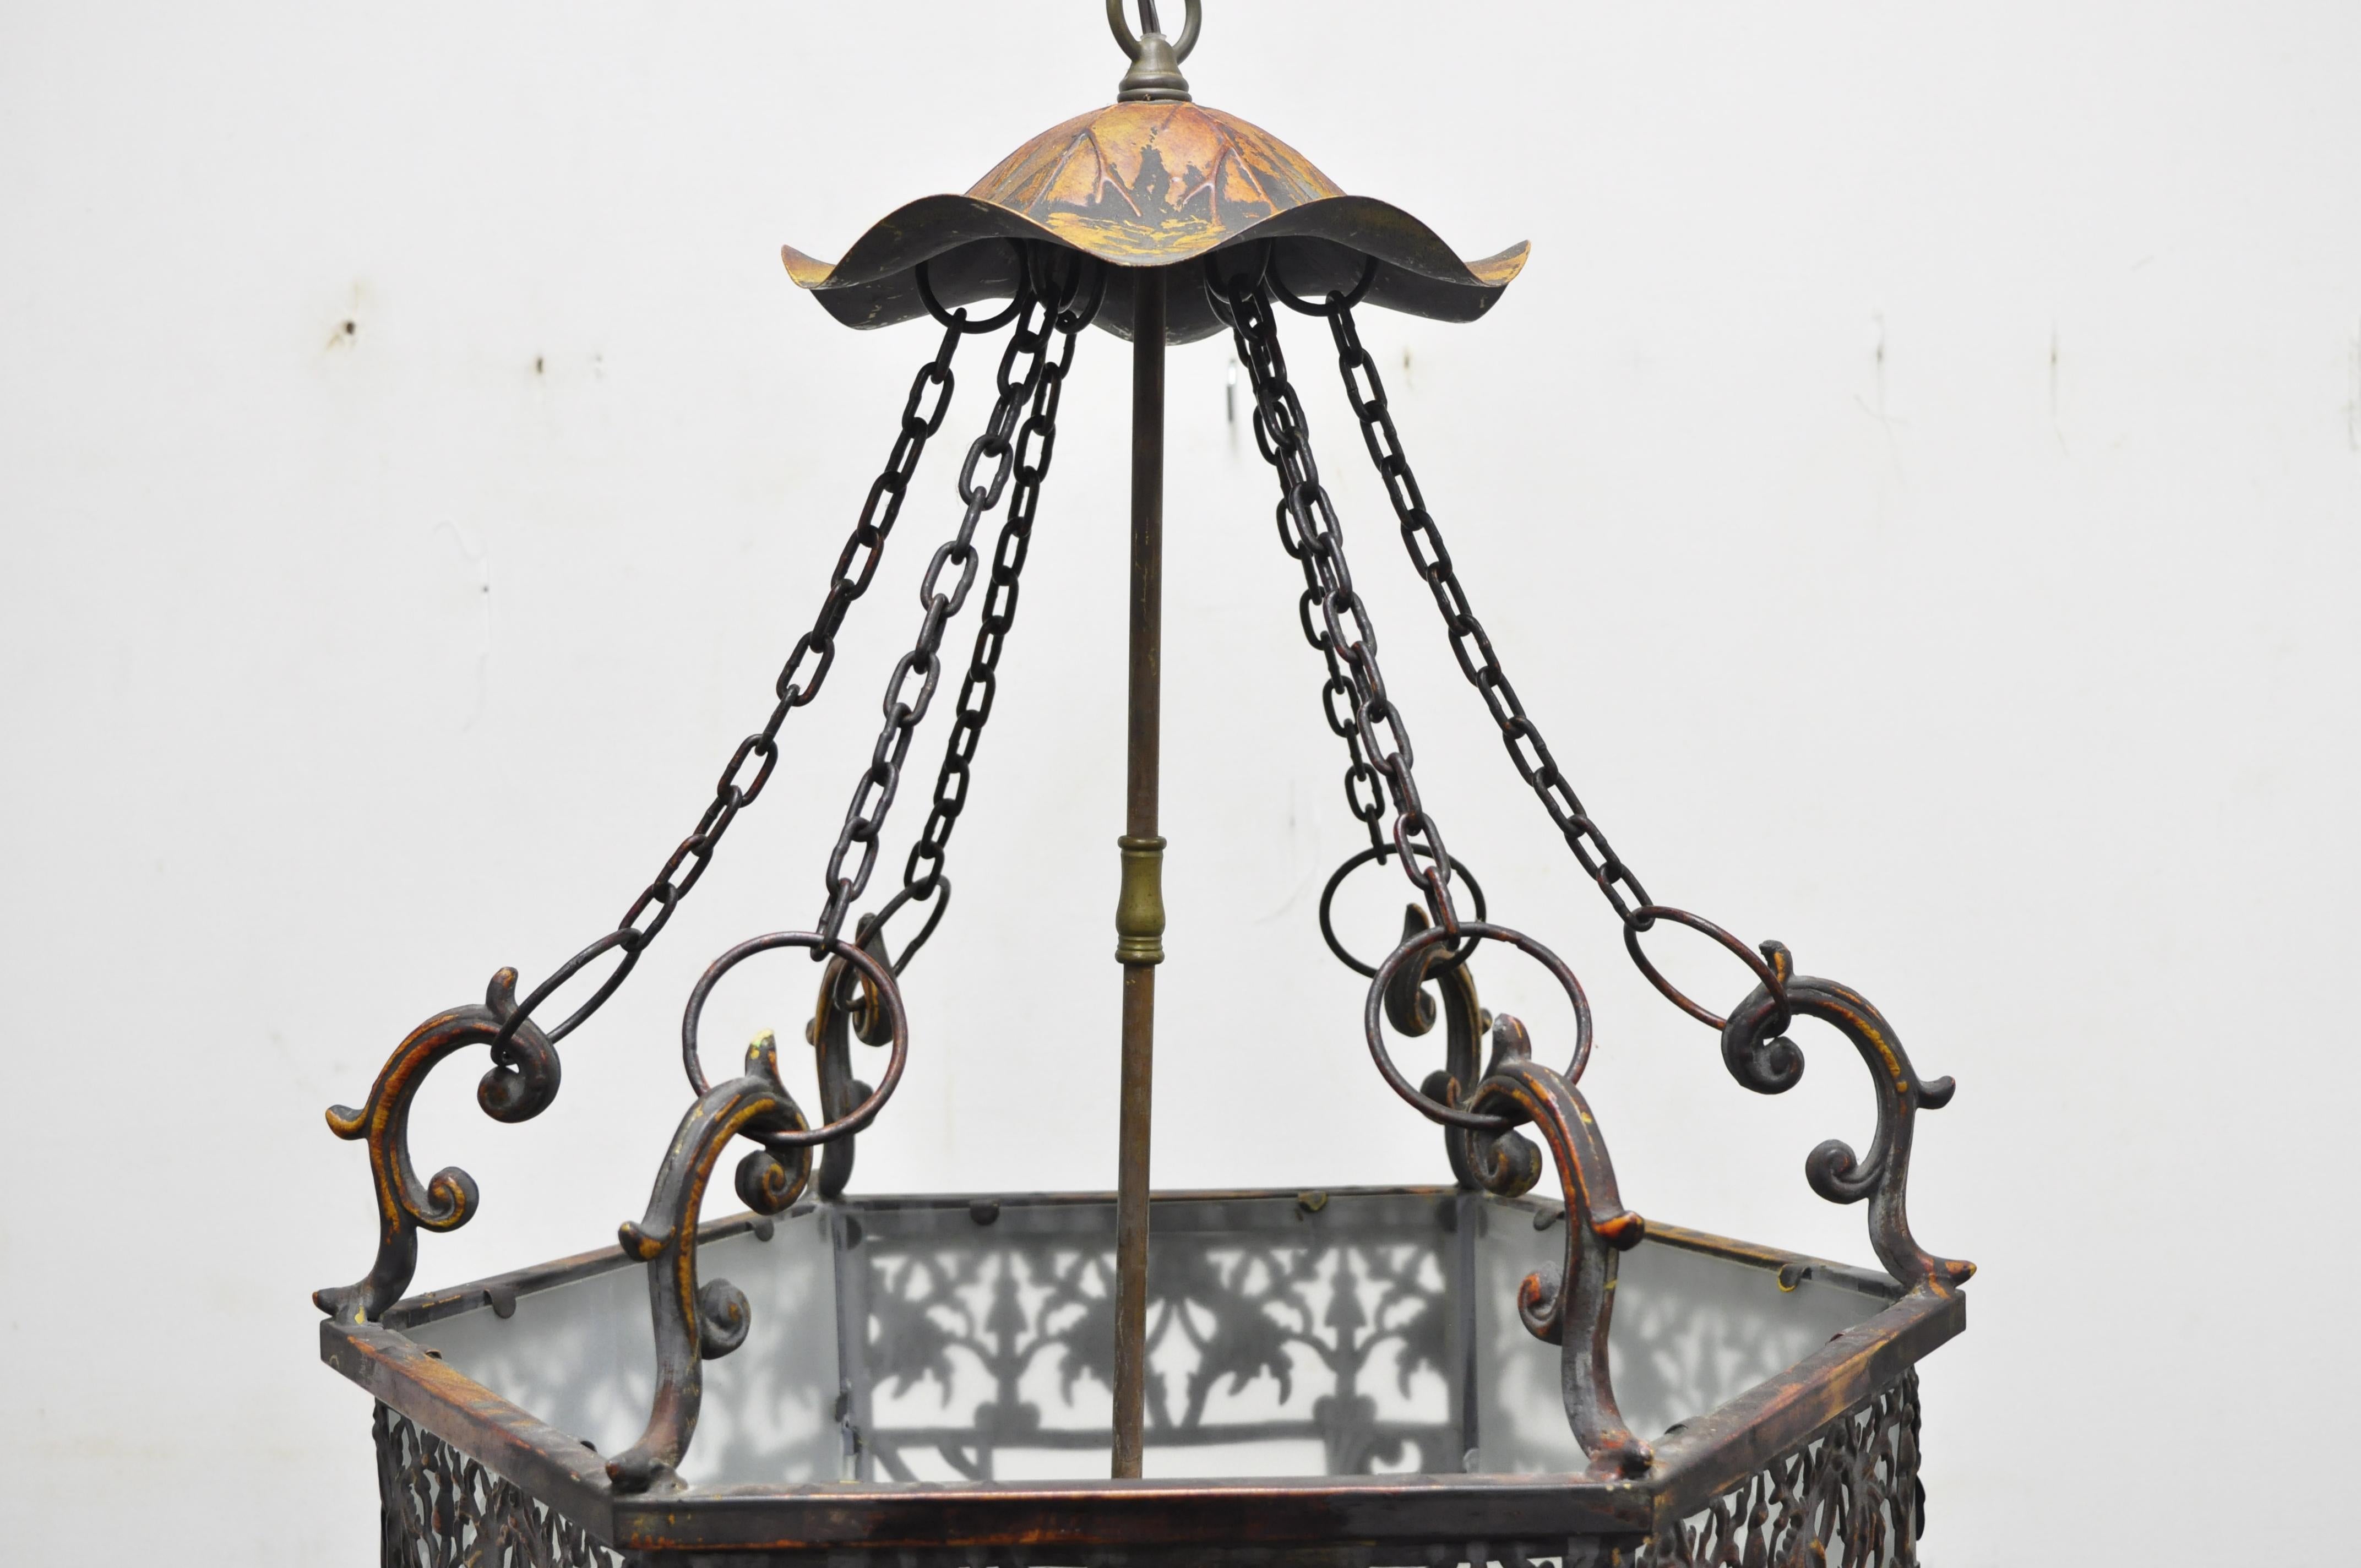 20th Century Art Nouveau Slag Glass Hexagonal Gilt Metal Pendant Light Chandelier Fixture For Sale